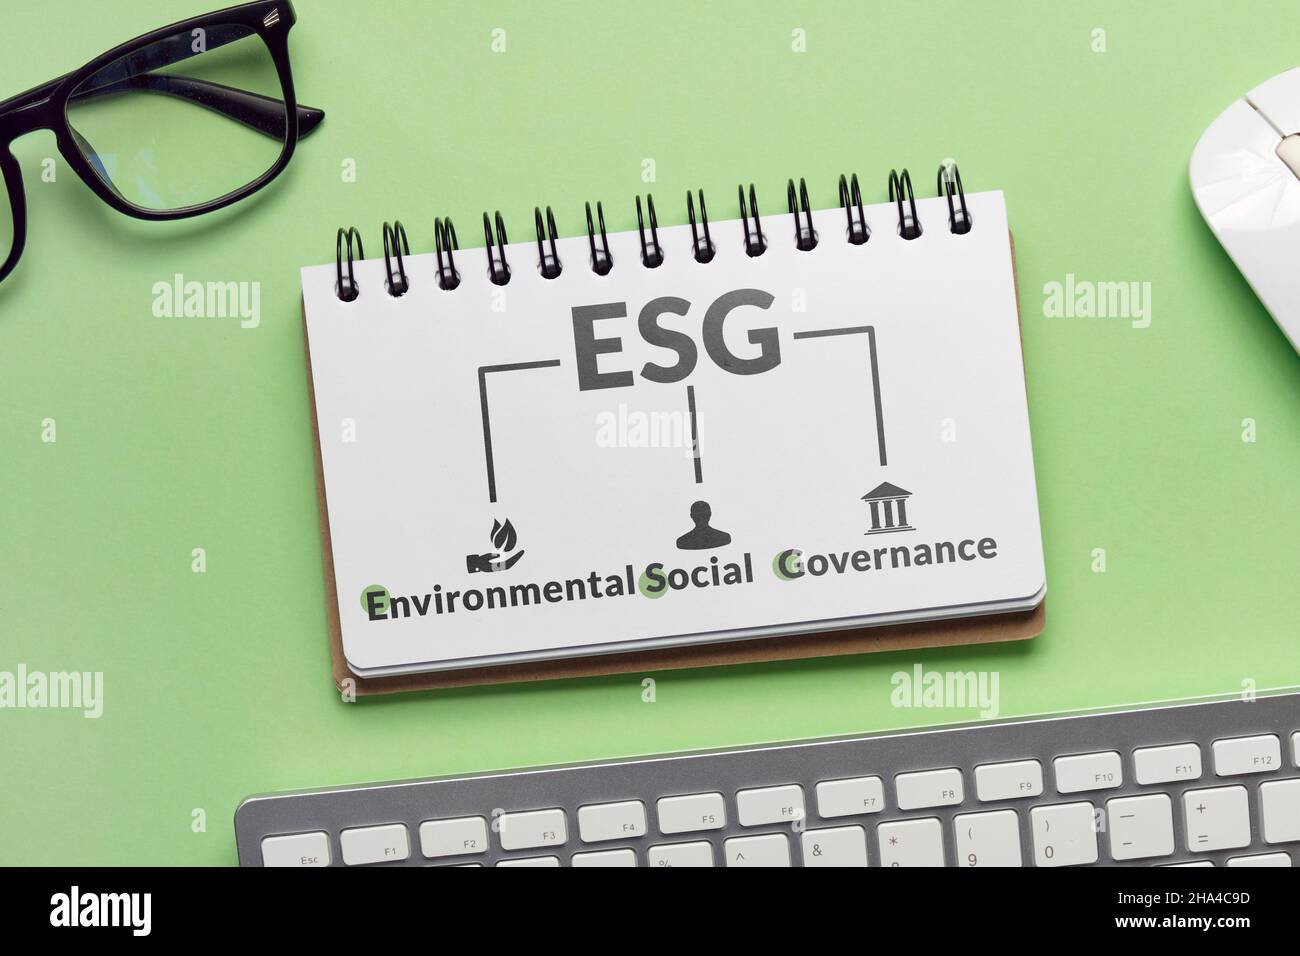 Mappa mentale ESG o governance sociale ambientale. Coinvolgere l'azienda nell'investimento per la conservazione della natura. Foto Stock